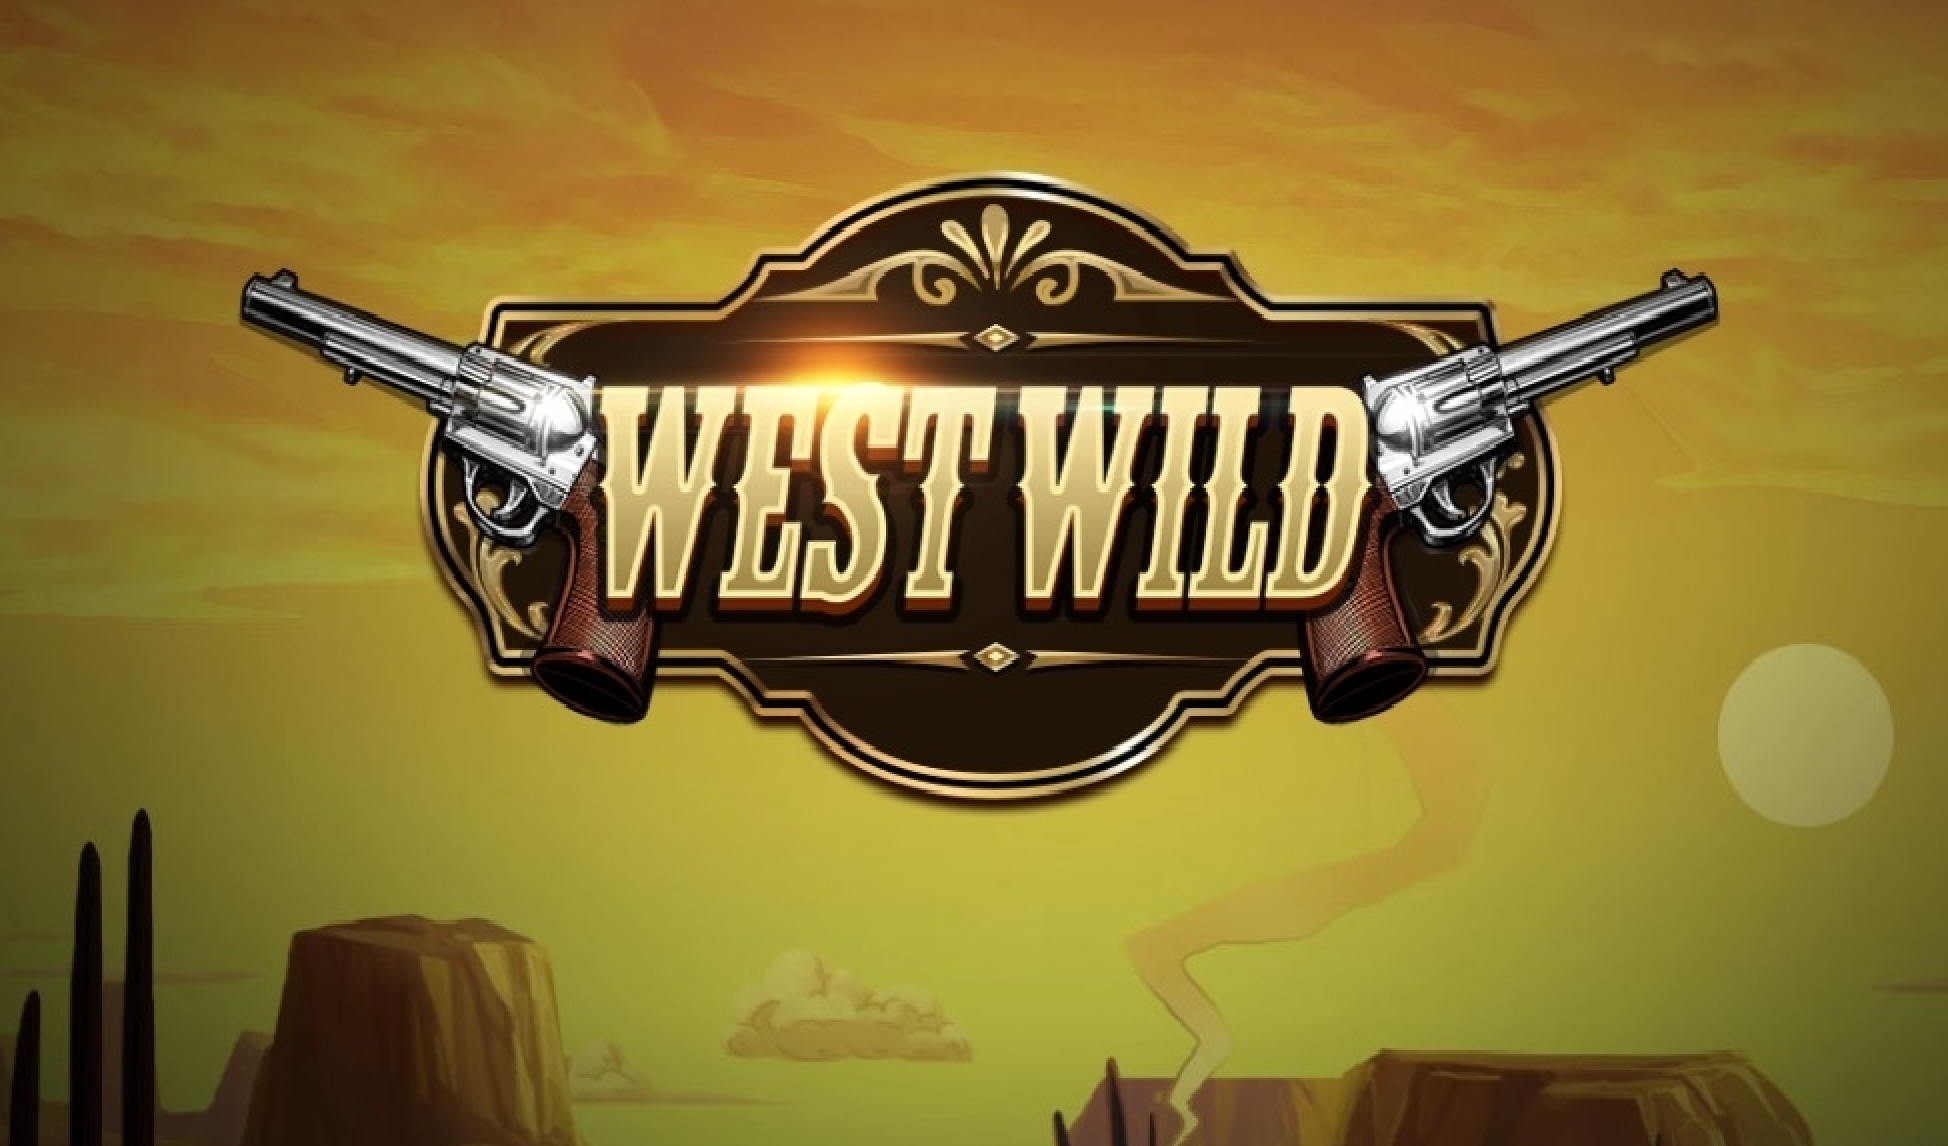 West Wild demo